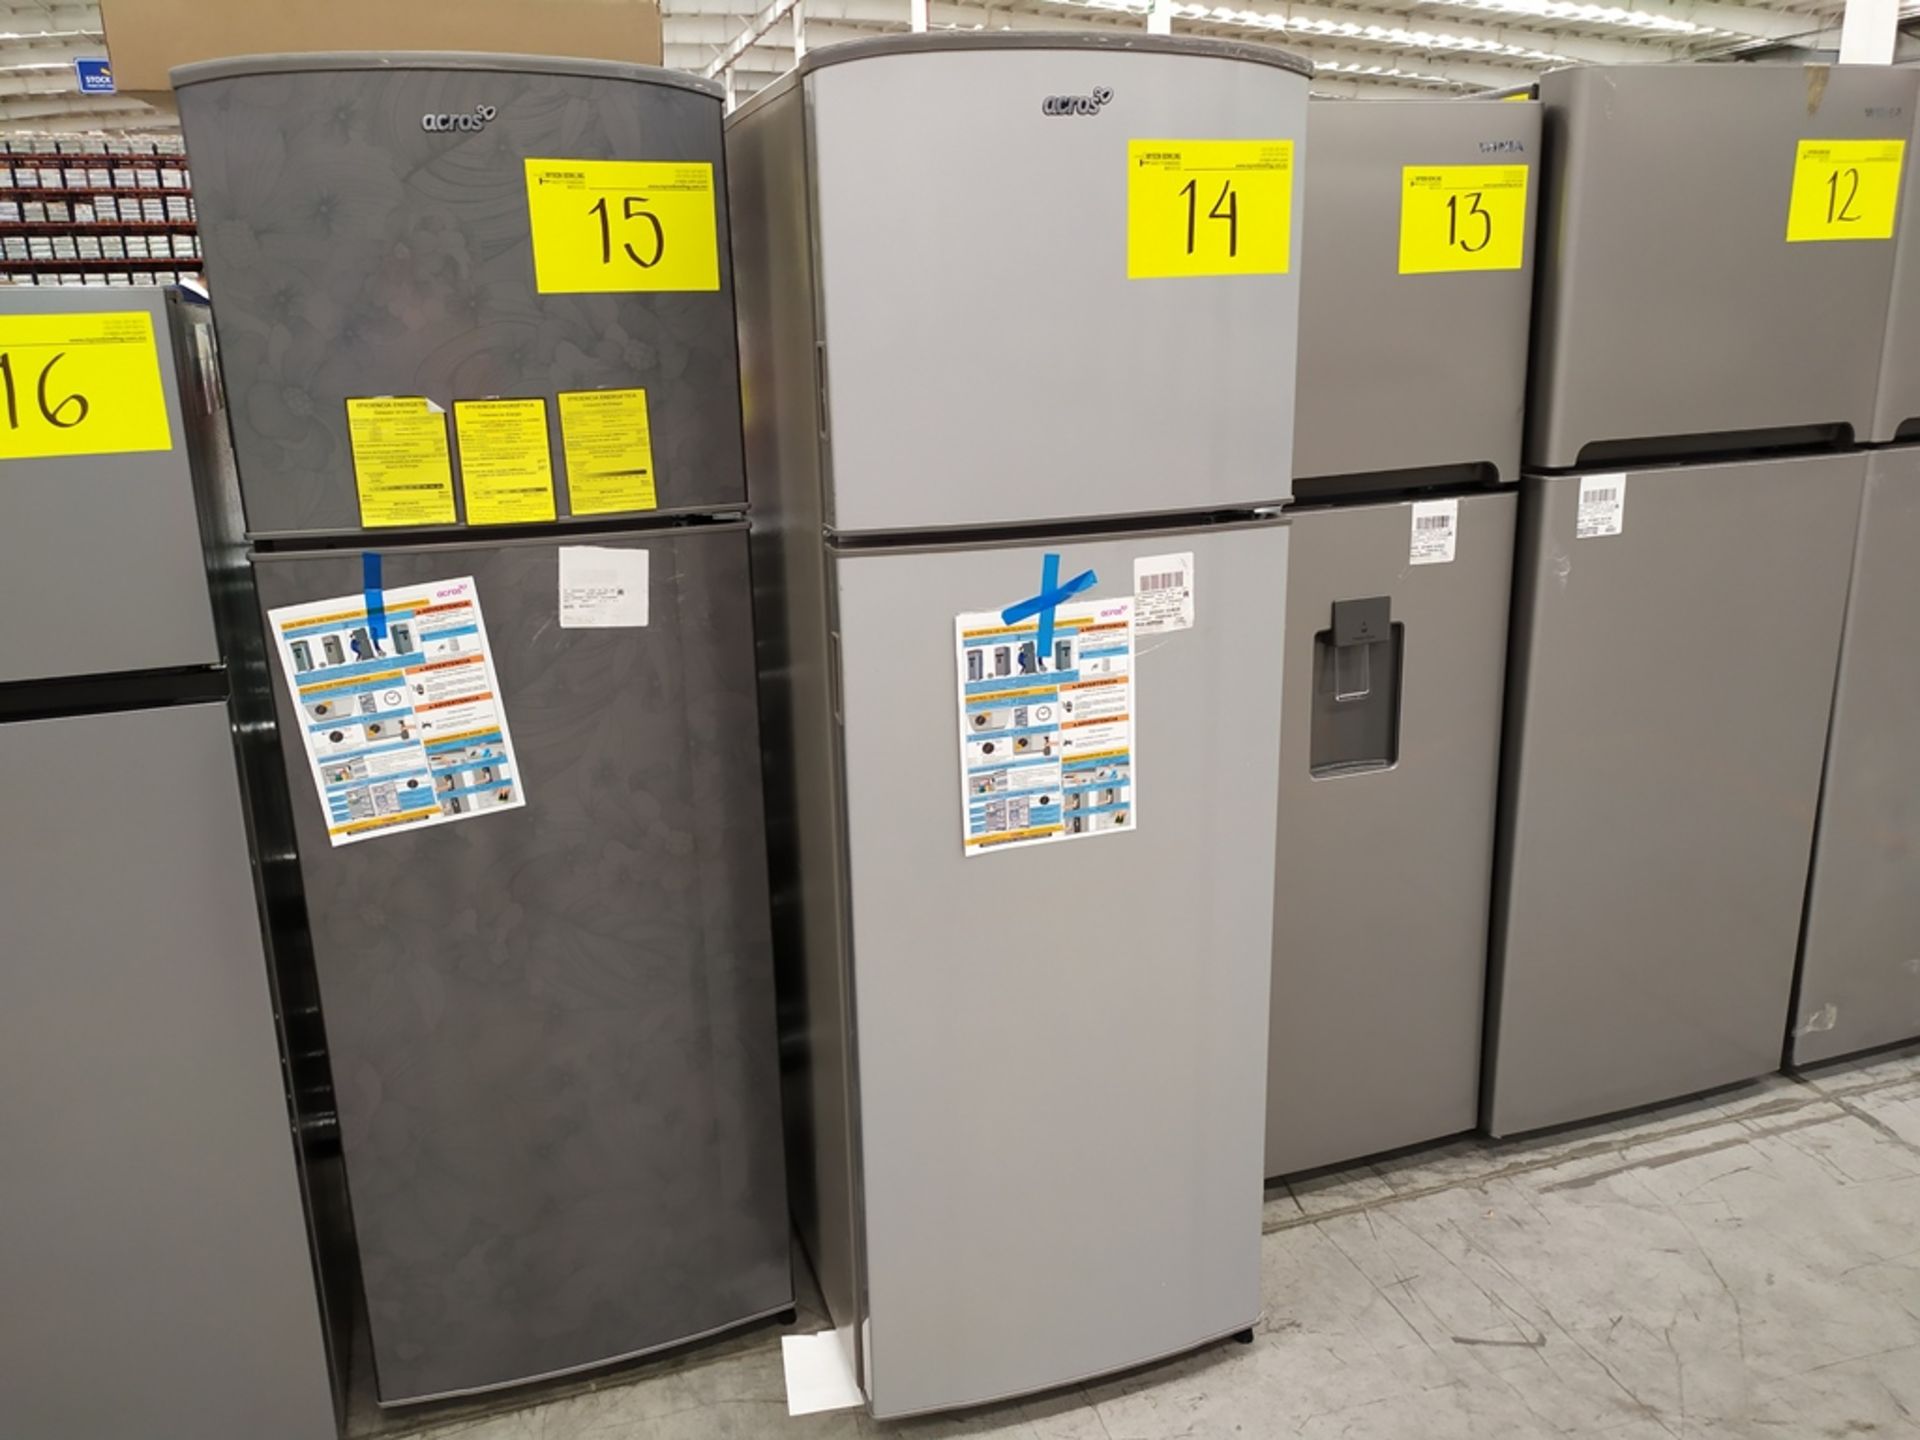 Refrigerador marca Acros, Modelo AT9007G, Serie 1478066, Color Gris, Golpeado, LB-750154559283 - Image 5 of 11